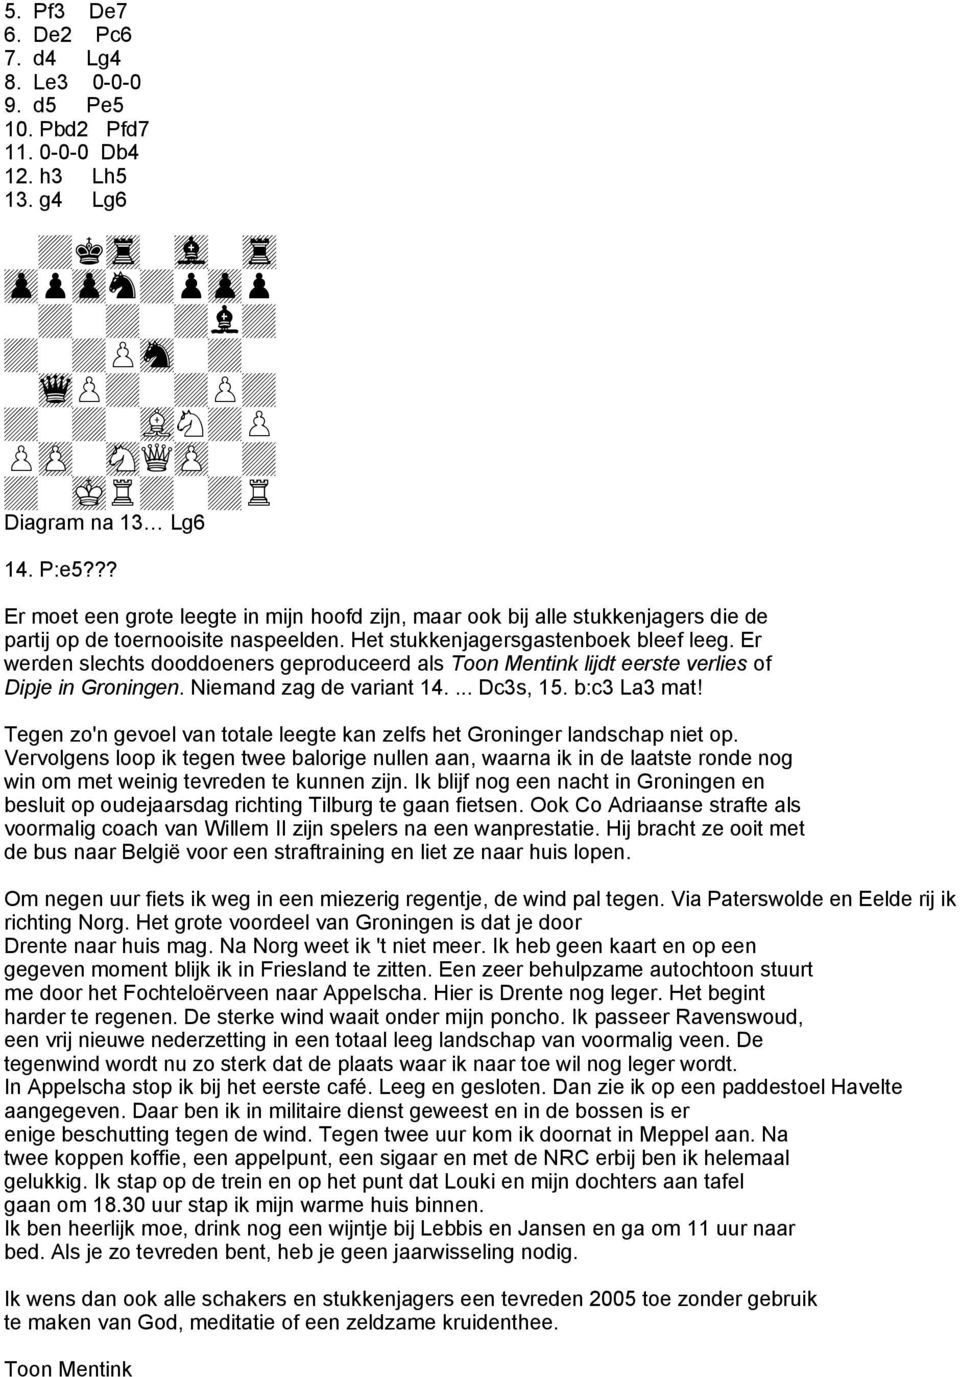 Er werden slechts dooddoeners geproduceerd als Toon Mentink lijdt eerste verlies of Dipje in Groningen. Niemand zag de variant 14.... Dc3s, 15. b:c3 La3 mat!